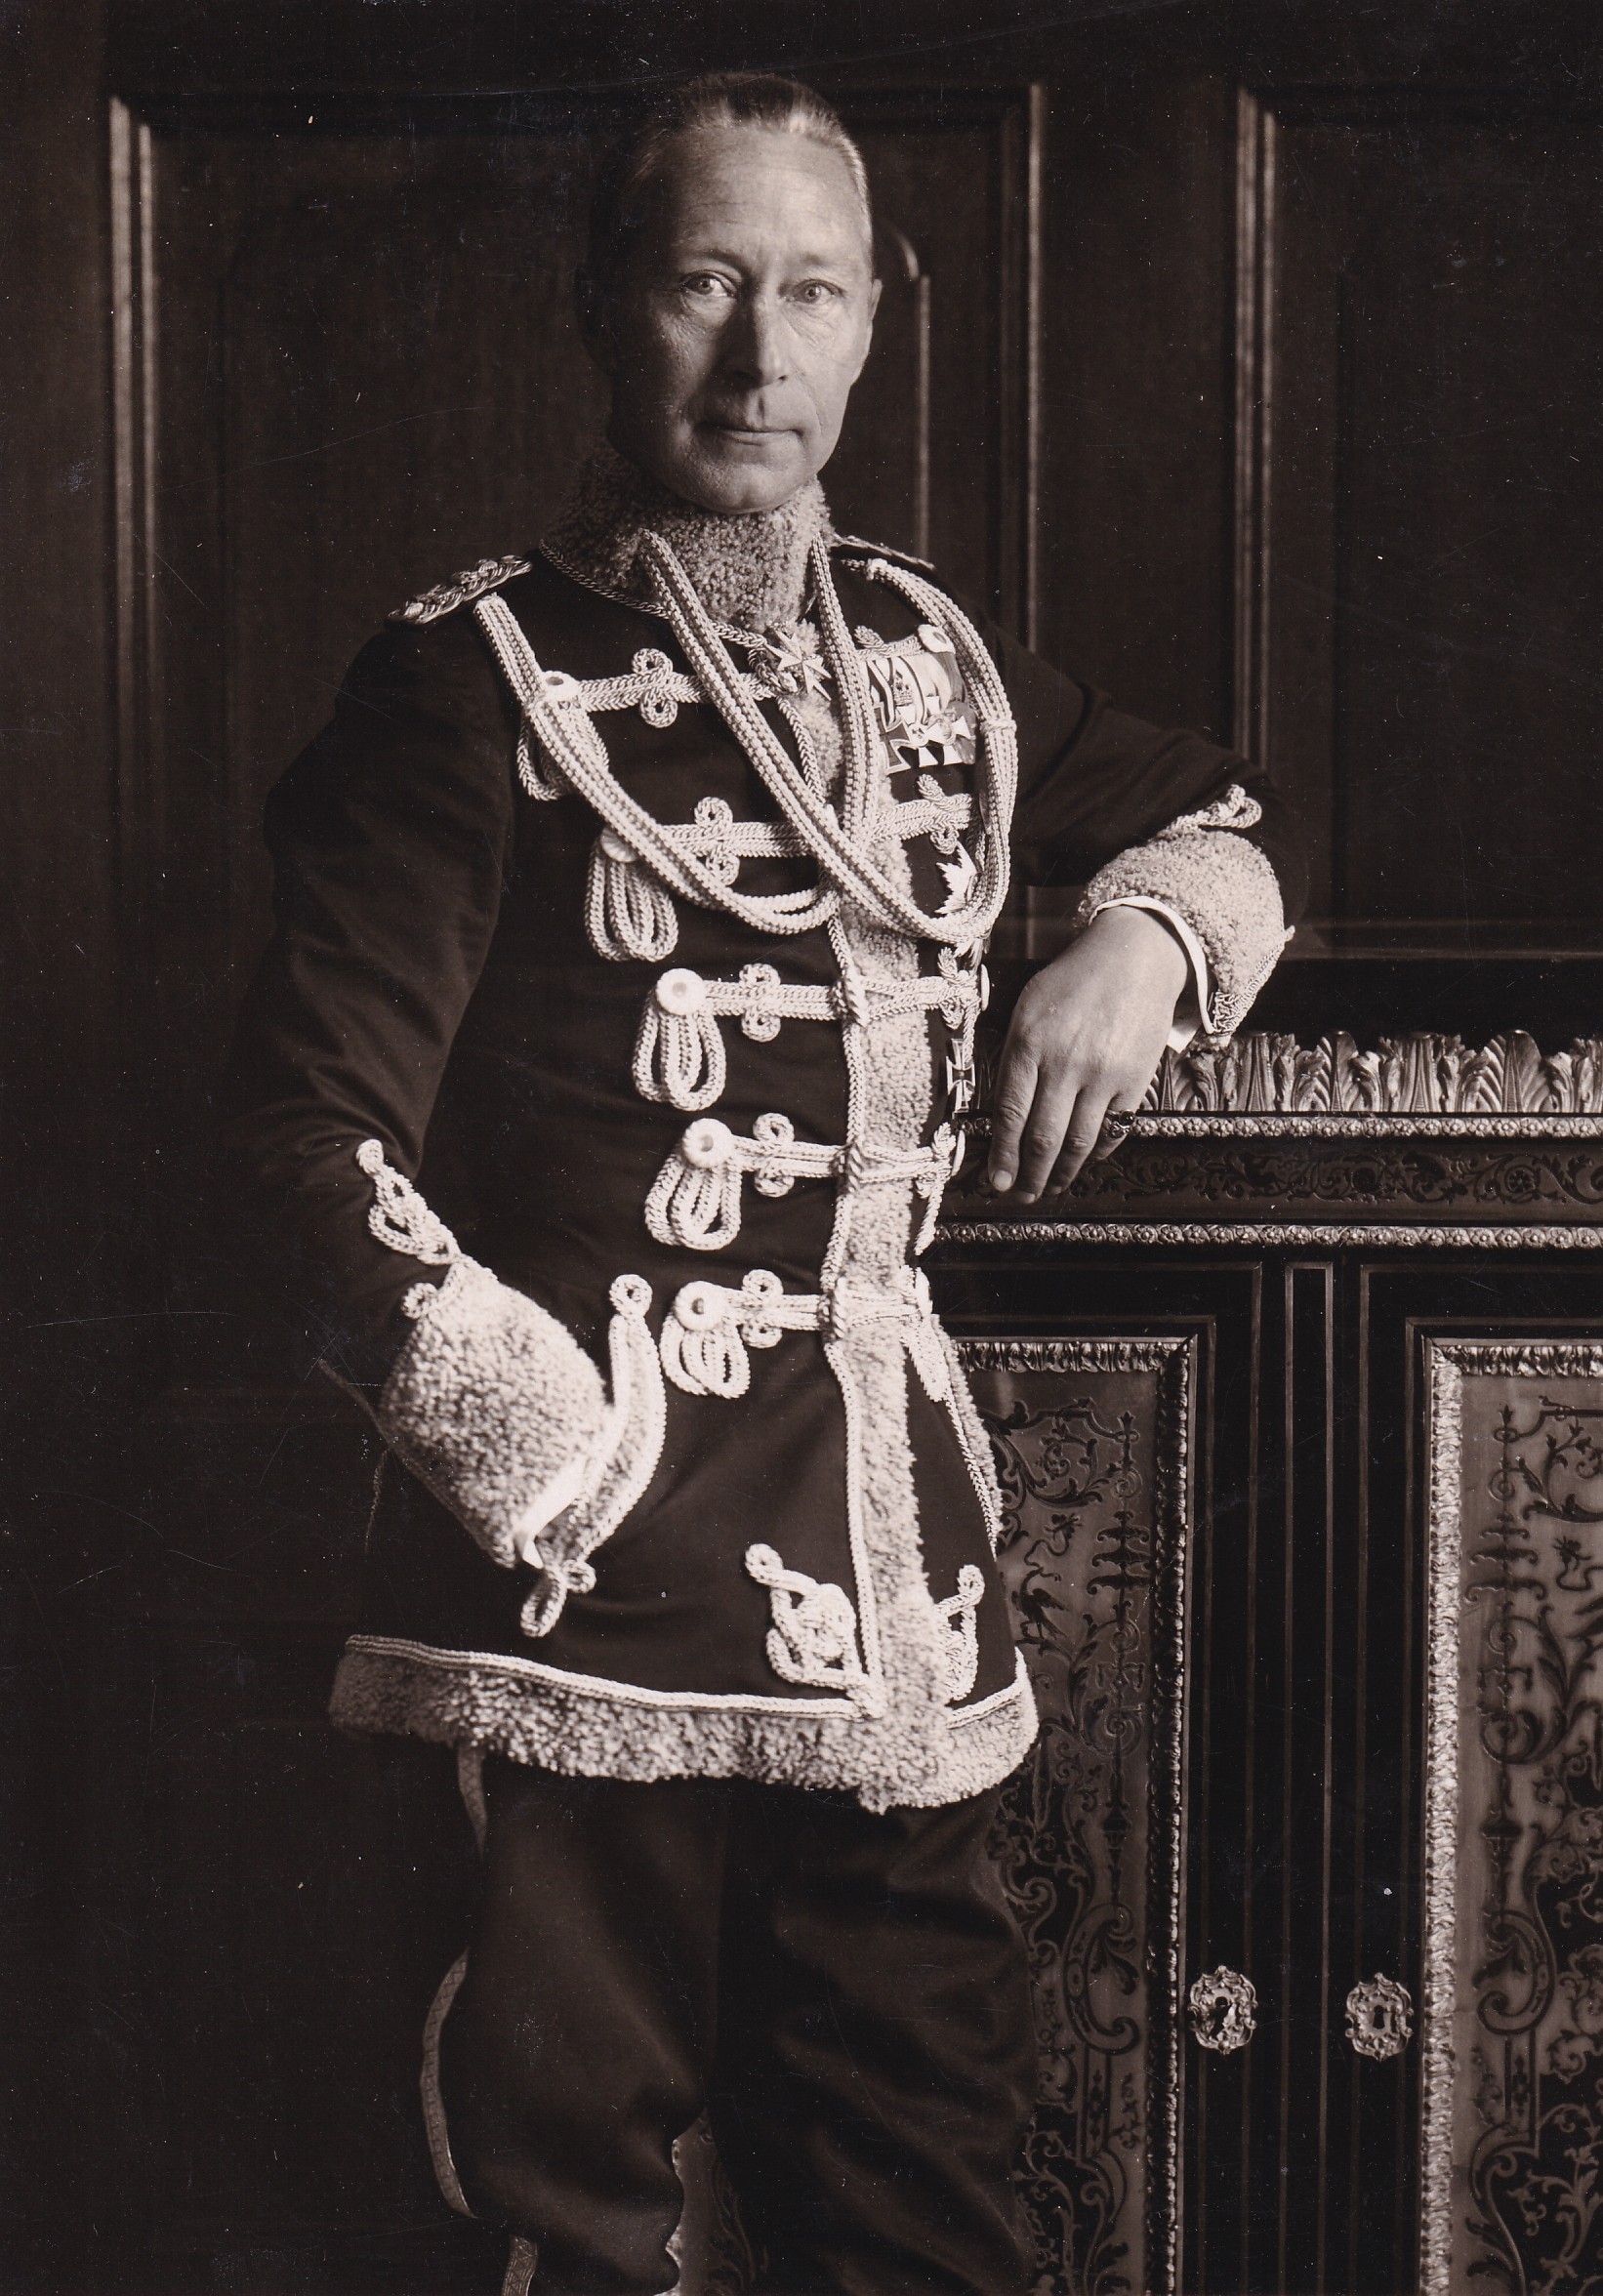 Abzug eines Fotos mit dem ehemaligen Kronprinzen Wilhelm in Husarenuniform, um 1930 (Schloß Wernigerode GmbH RR-F)